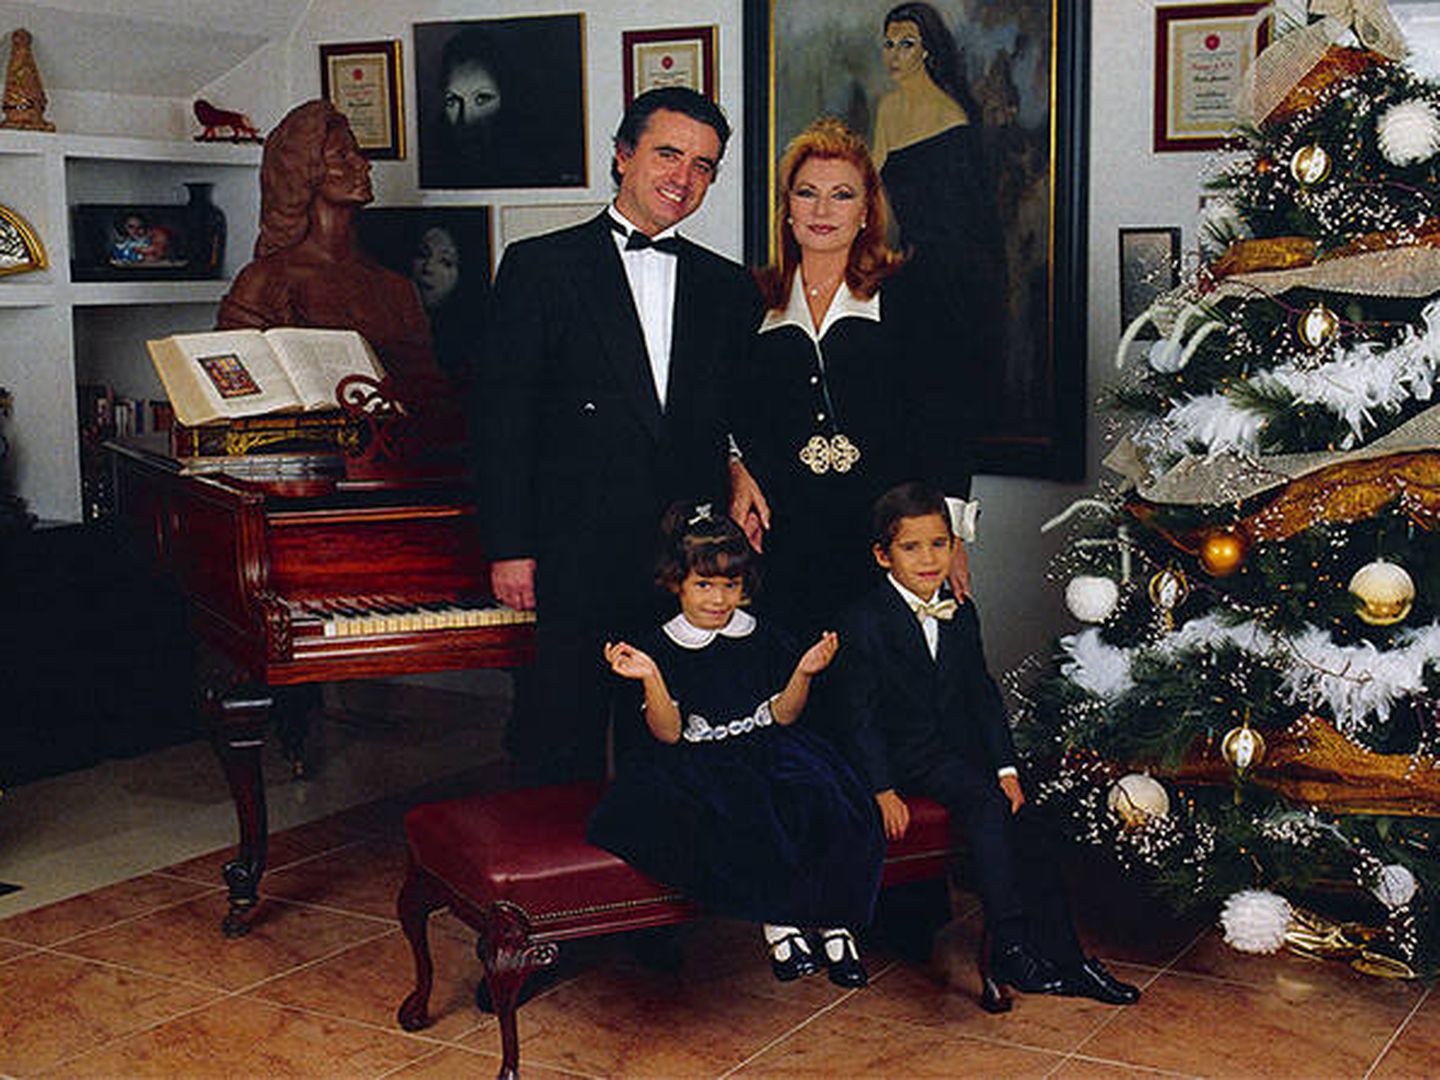 La familia Ortega Mohedano. (Foto: Rociojuradofanclub.com)